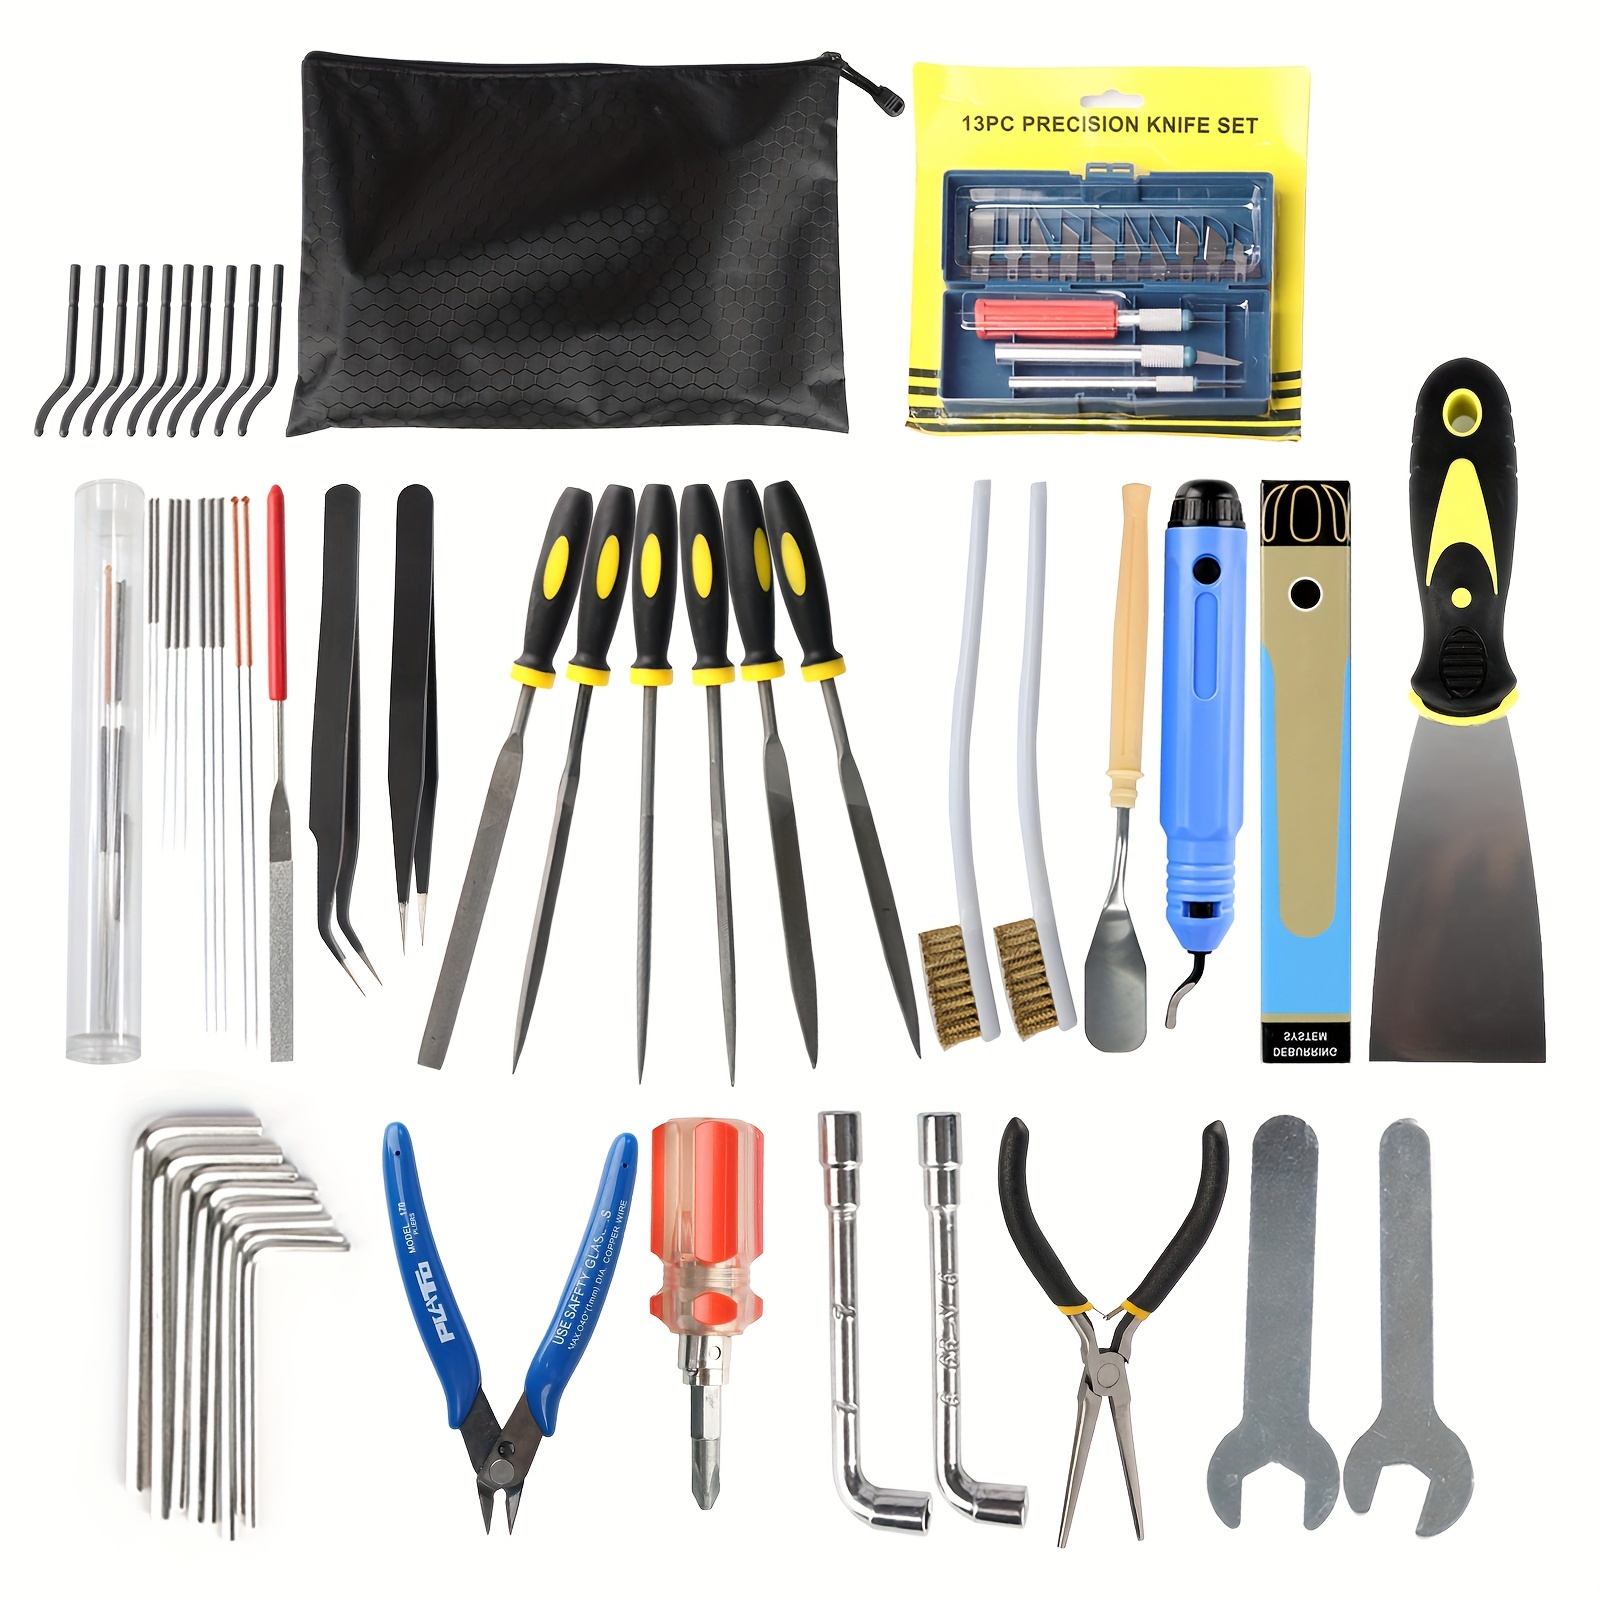 HURRISE kit d'outils d'imprimante 3D Modèle Kit d'outils Pinces Brucelles  File Carving Knife Craft Tools Set pour l'impression 3D